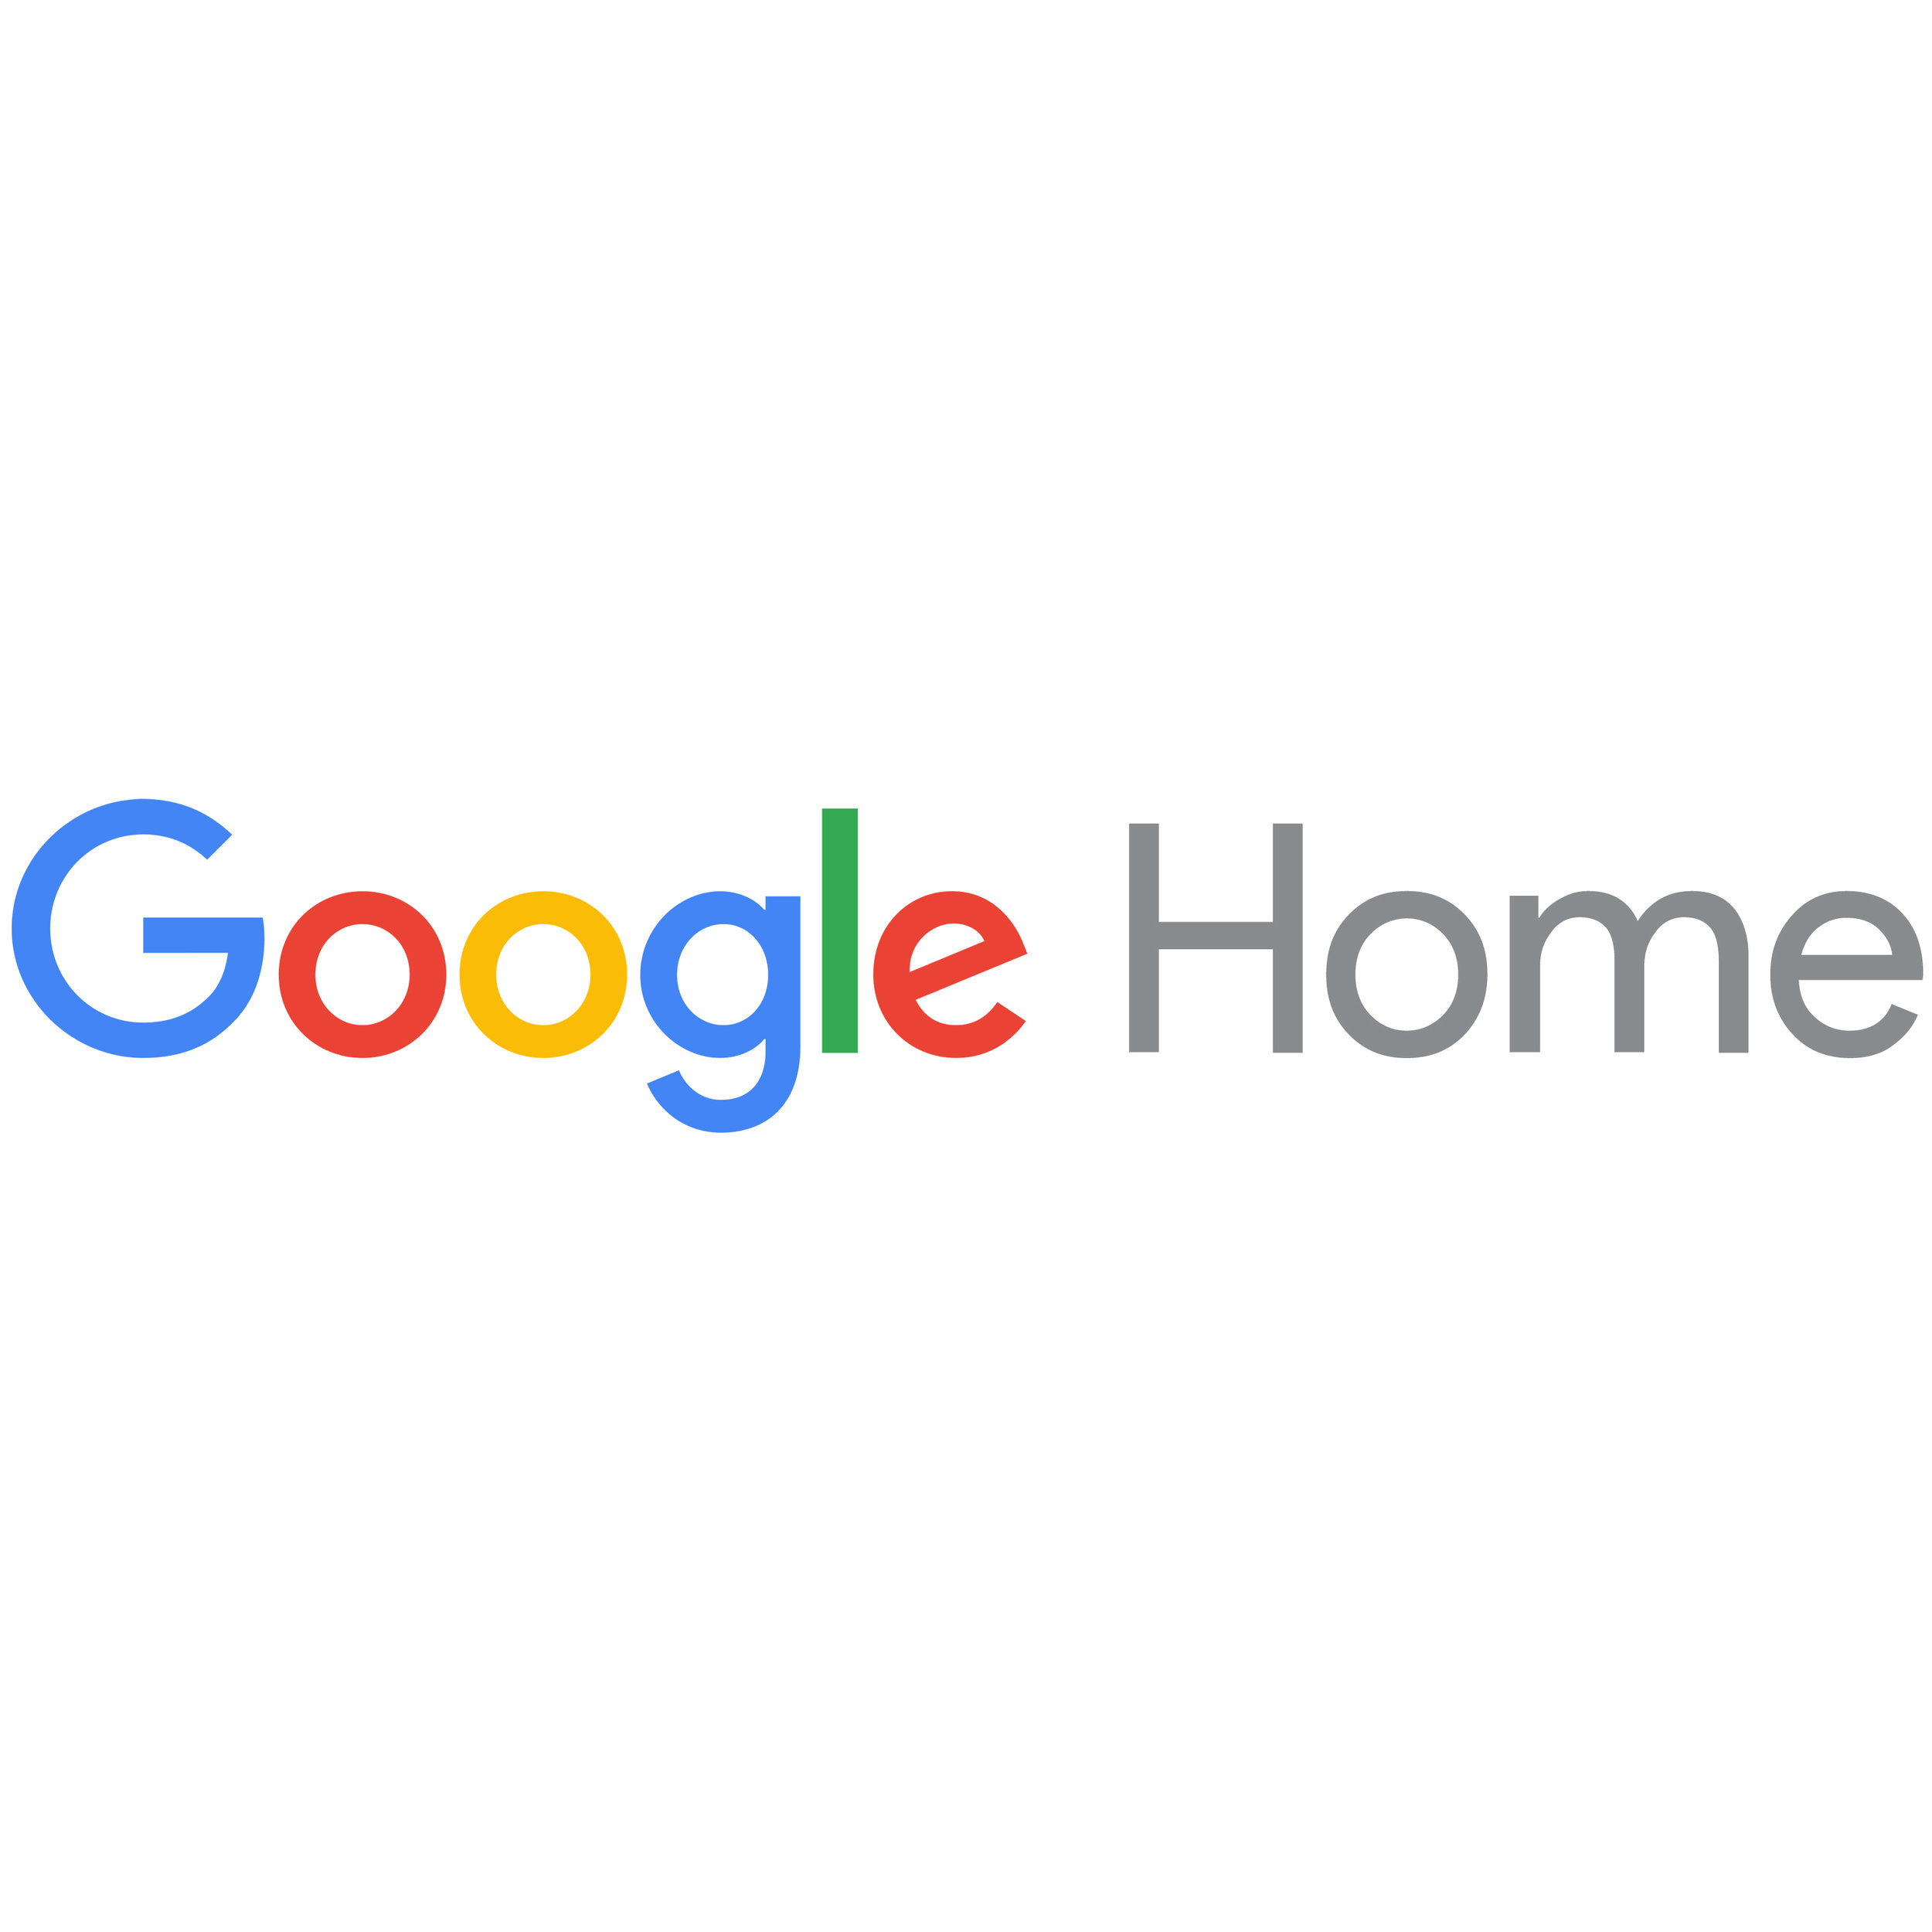 Google Home Logo 3000x3000.jpg